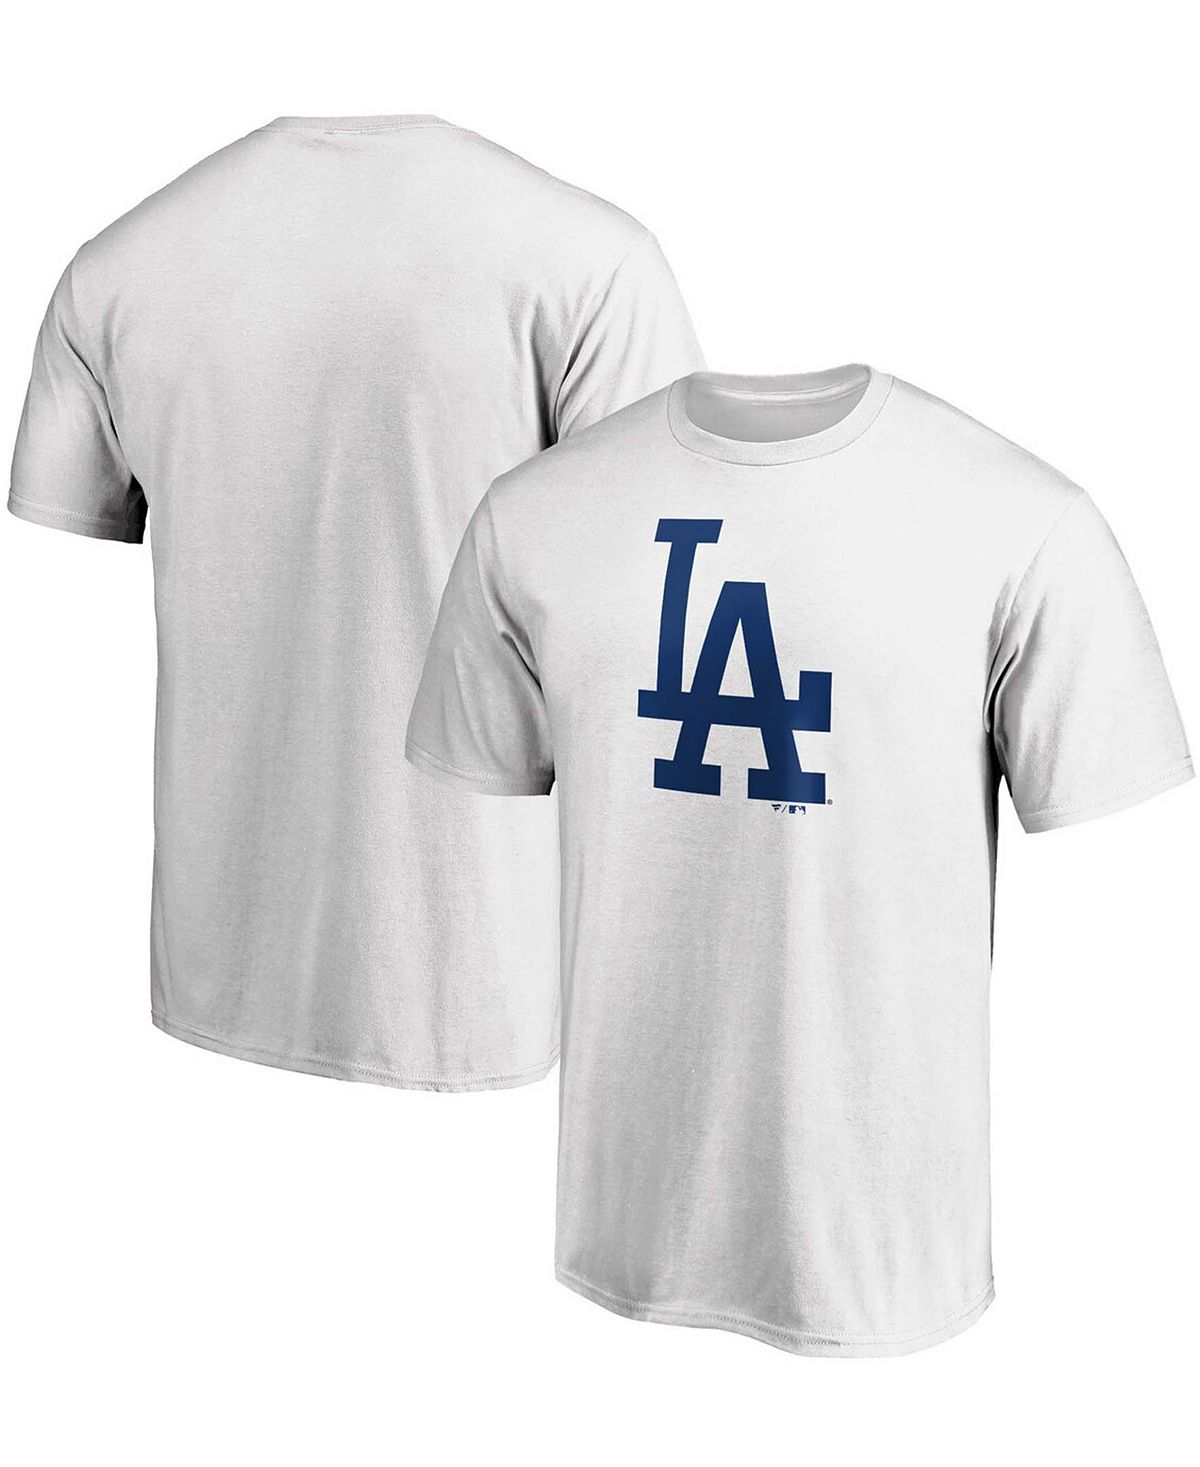 Мужская белая футболка с официальным логотипом Los Angeles Dodgers Fanatics